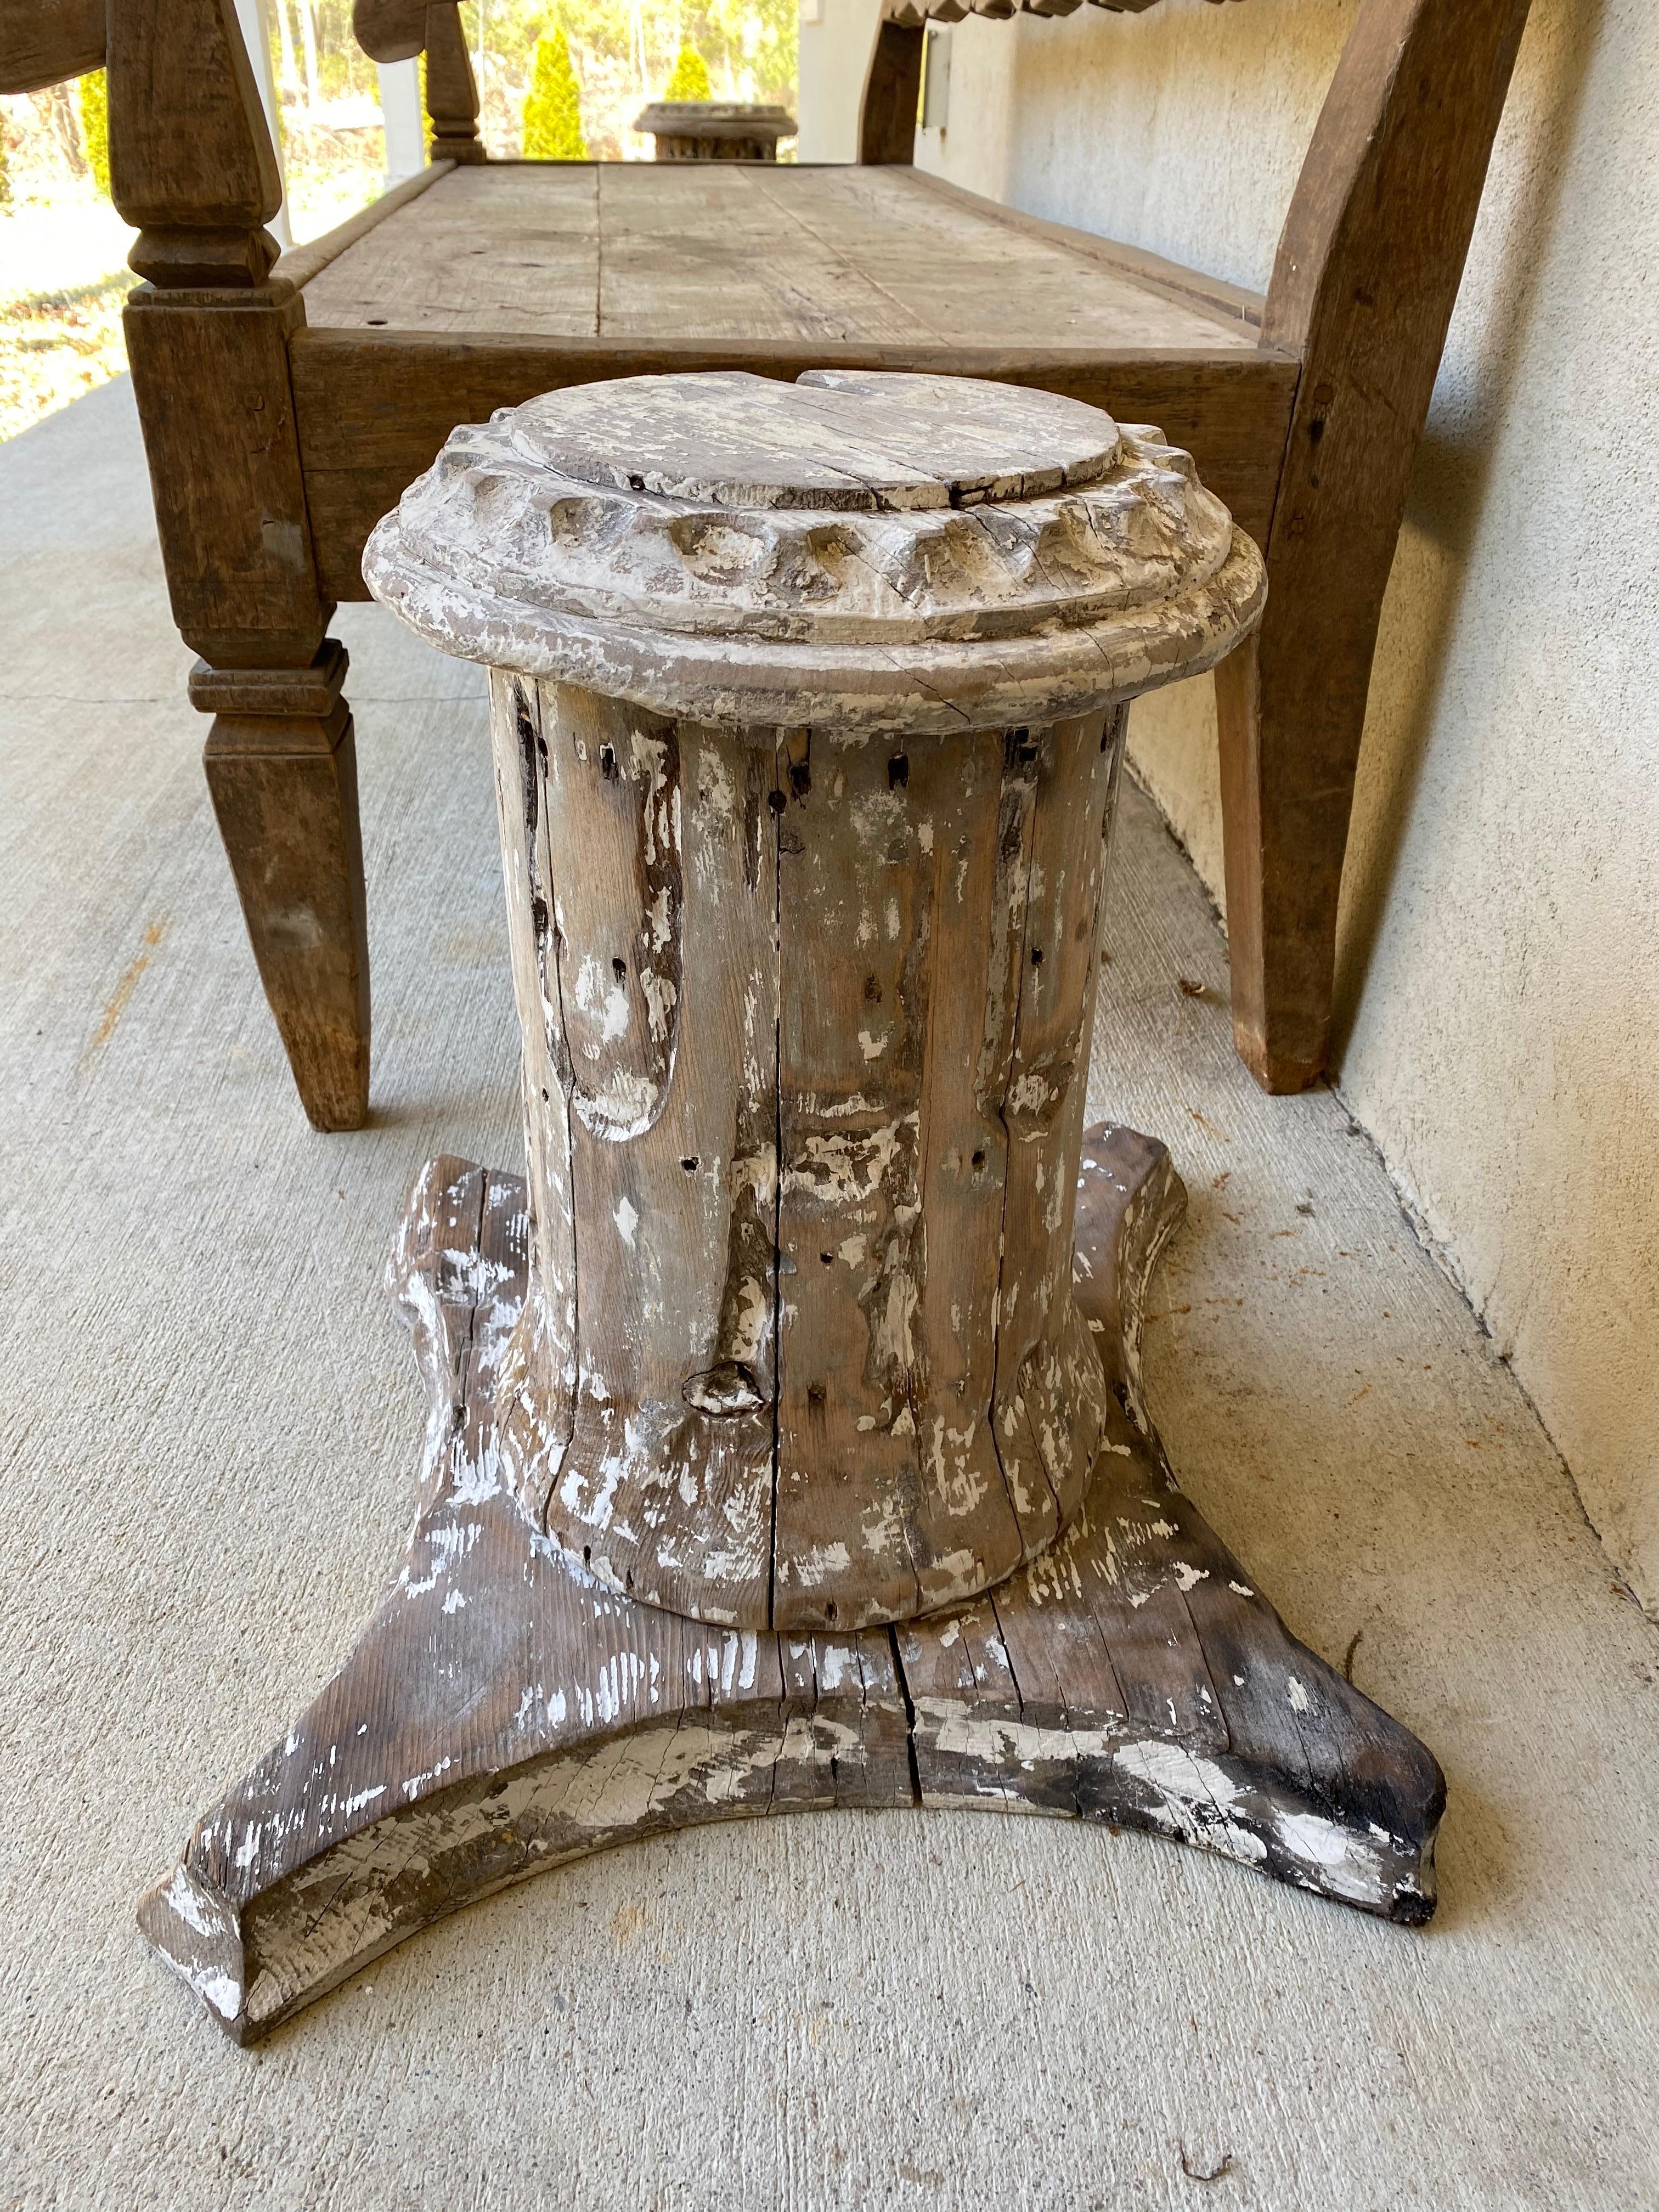 Le socle, le piédestal ou la base de la colonne en bois antique très rustique de style classique peut être utilisé comme table d'appoint, table d'extrémité ou piédestal pour une utilisation intérieure ou extérieure, dans un décor décontracté, de